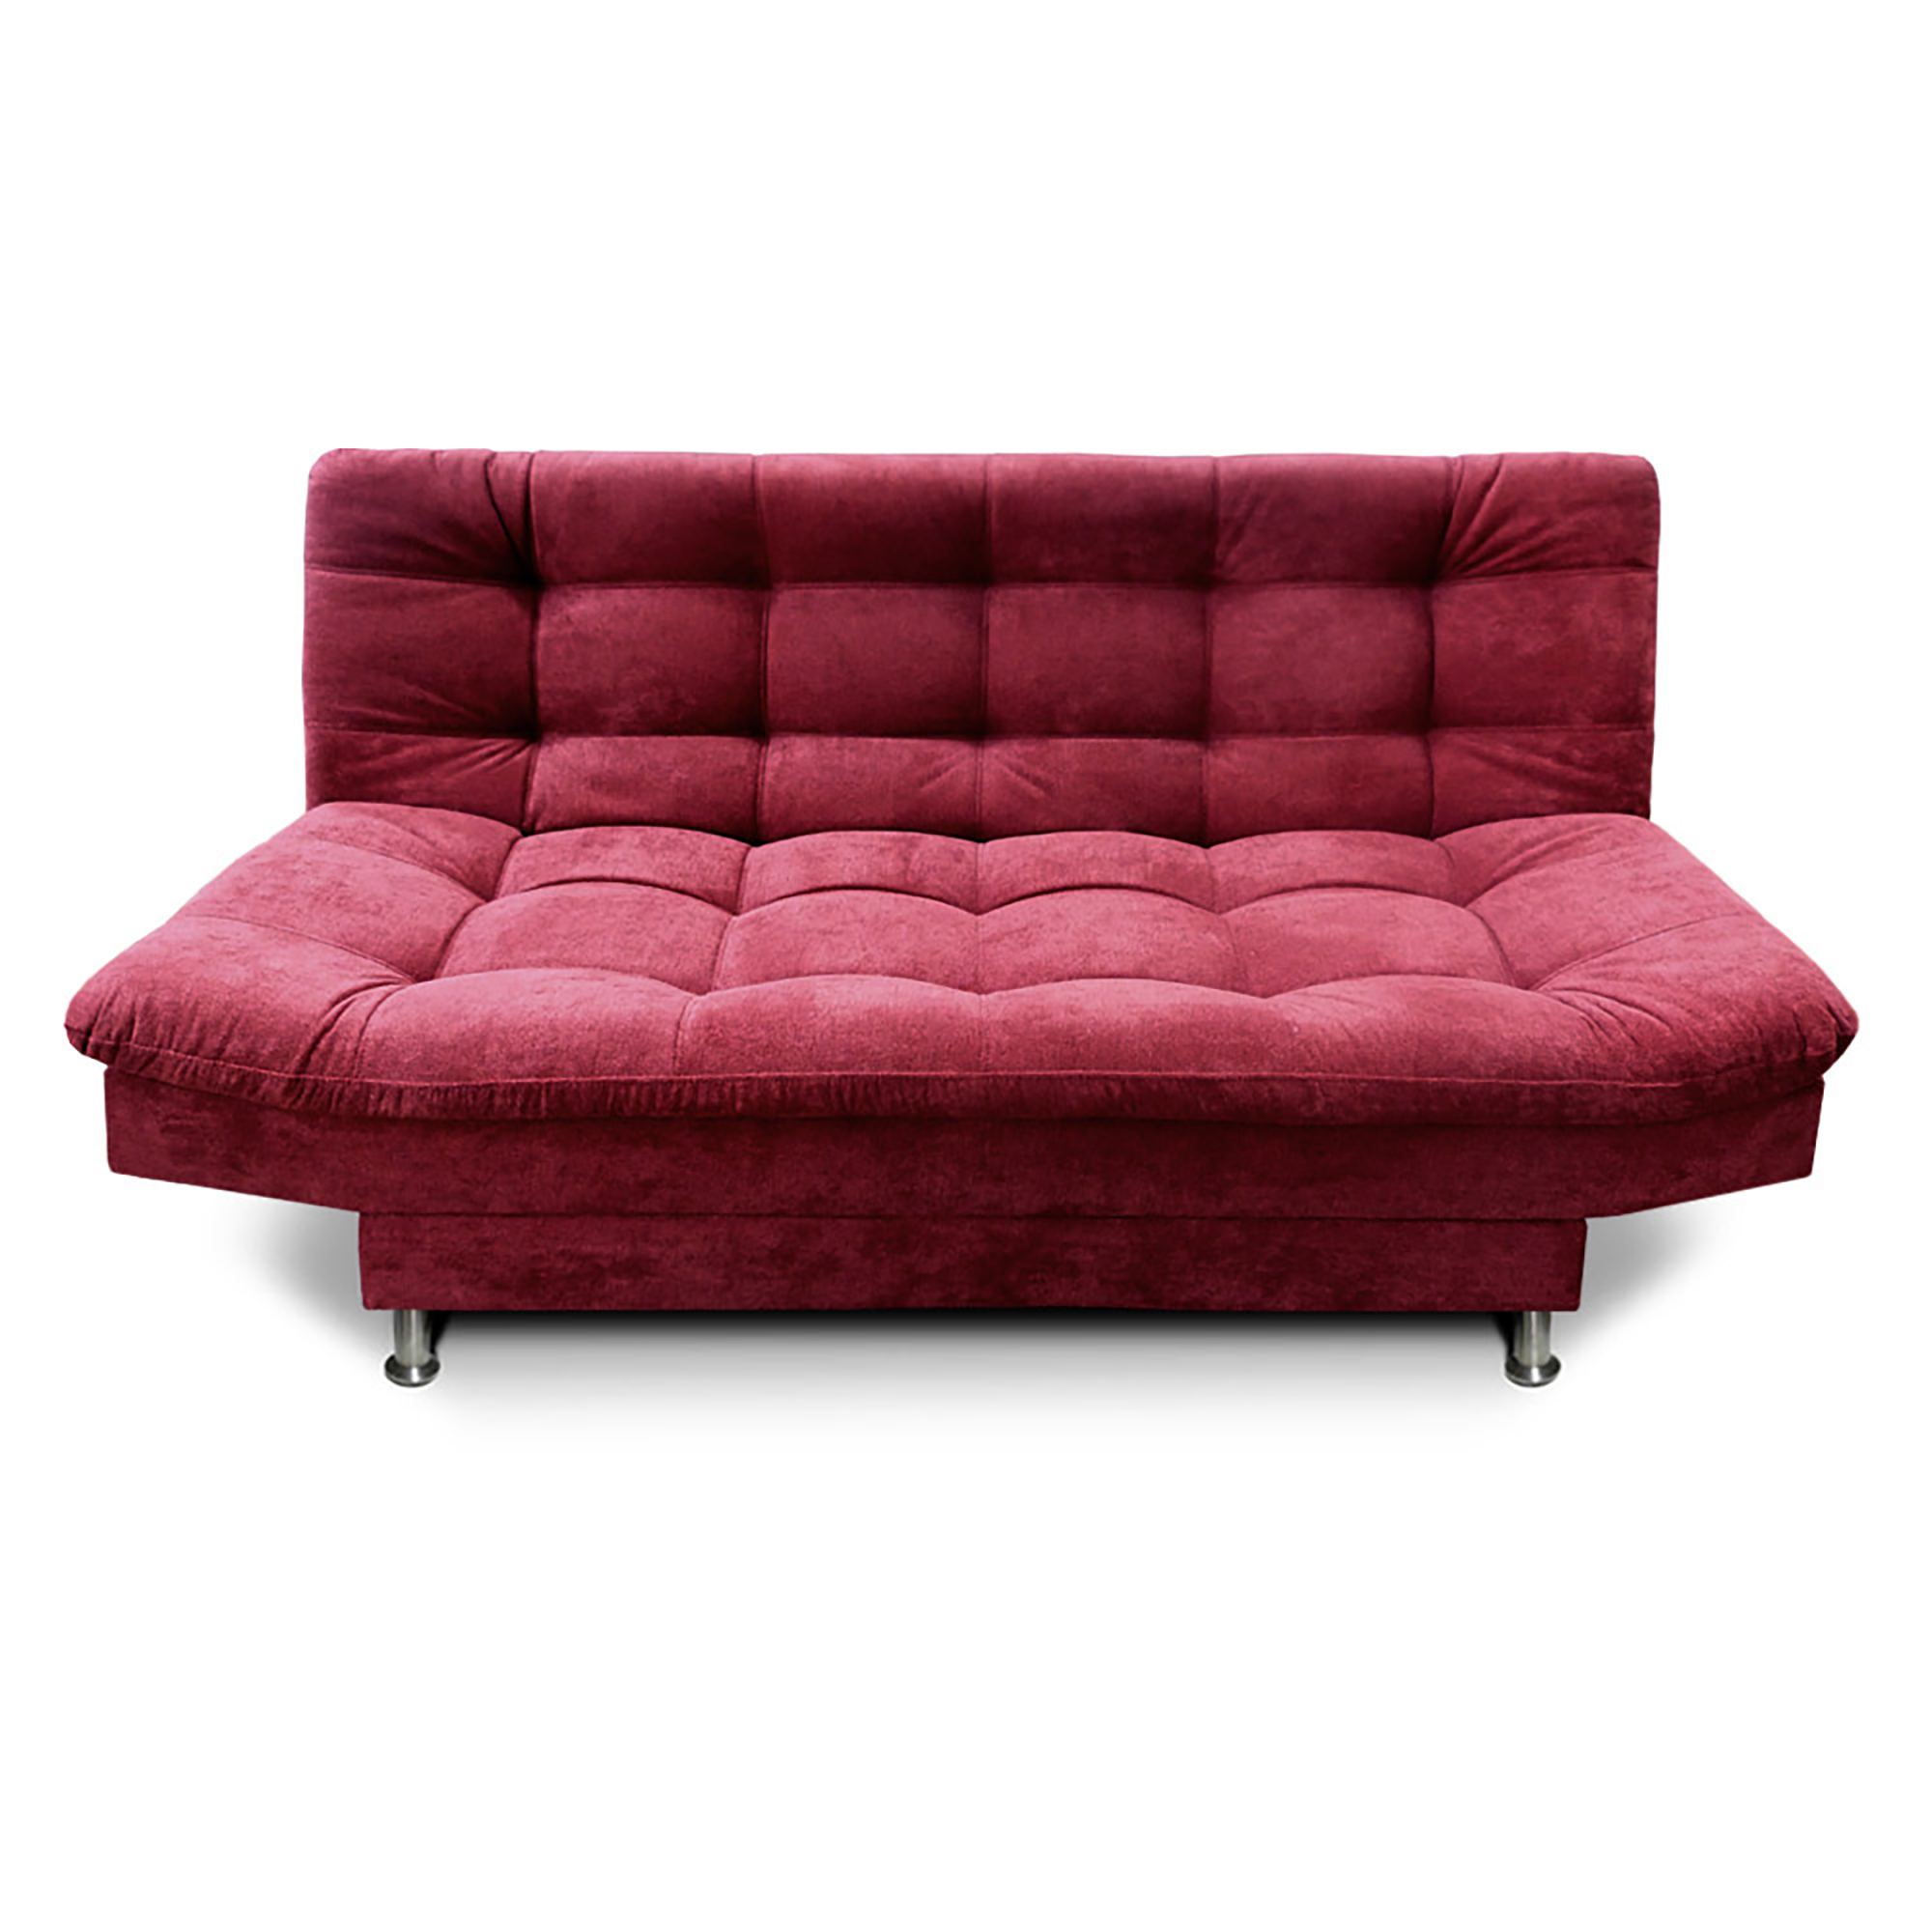 Sofa Cama Imperial Color Rojo